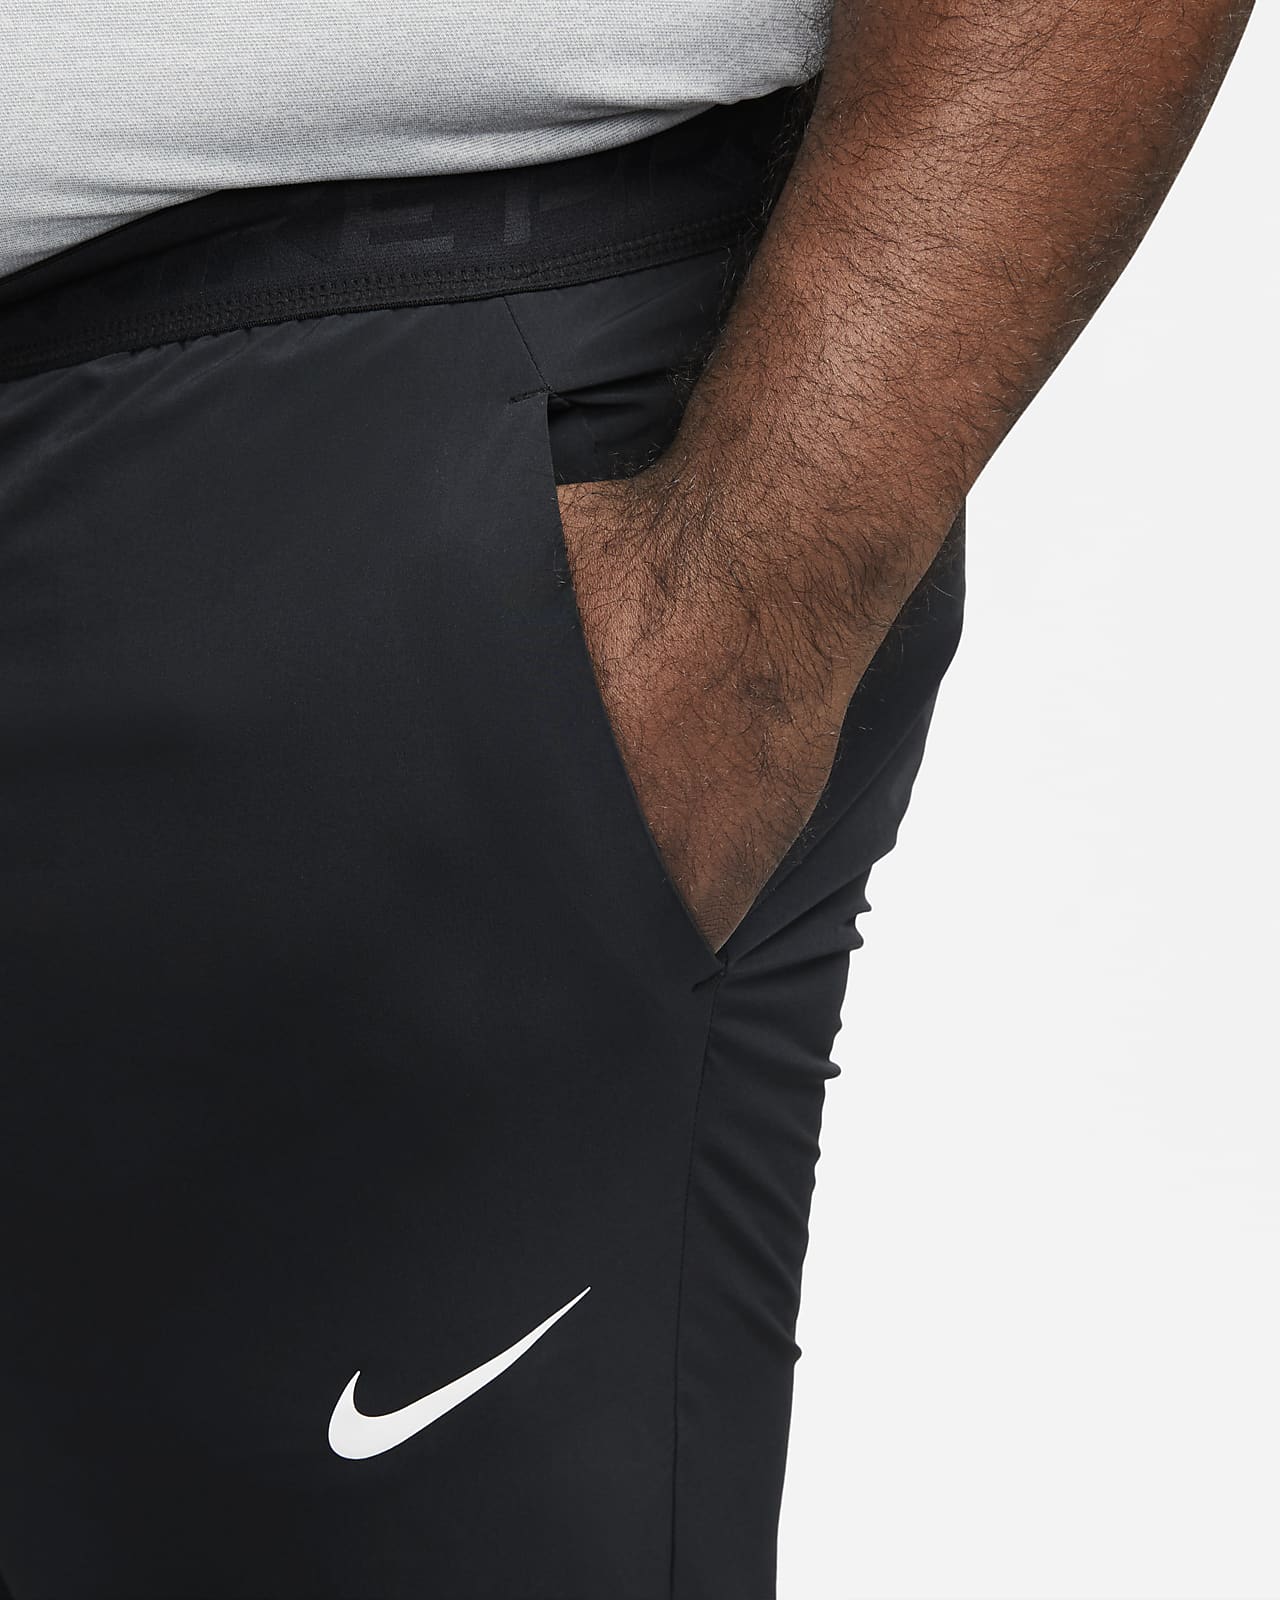 Notable rock Tremendo Nike Pro Dri-FIT Vent Max Pantalón de entrenamiento - Hombre. Nike ES